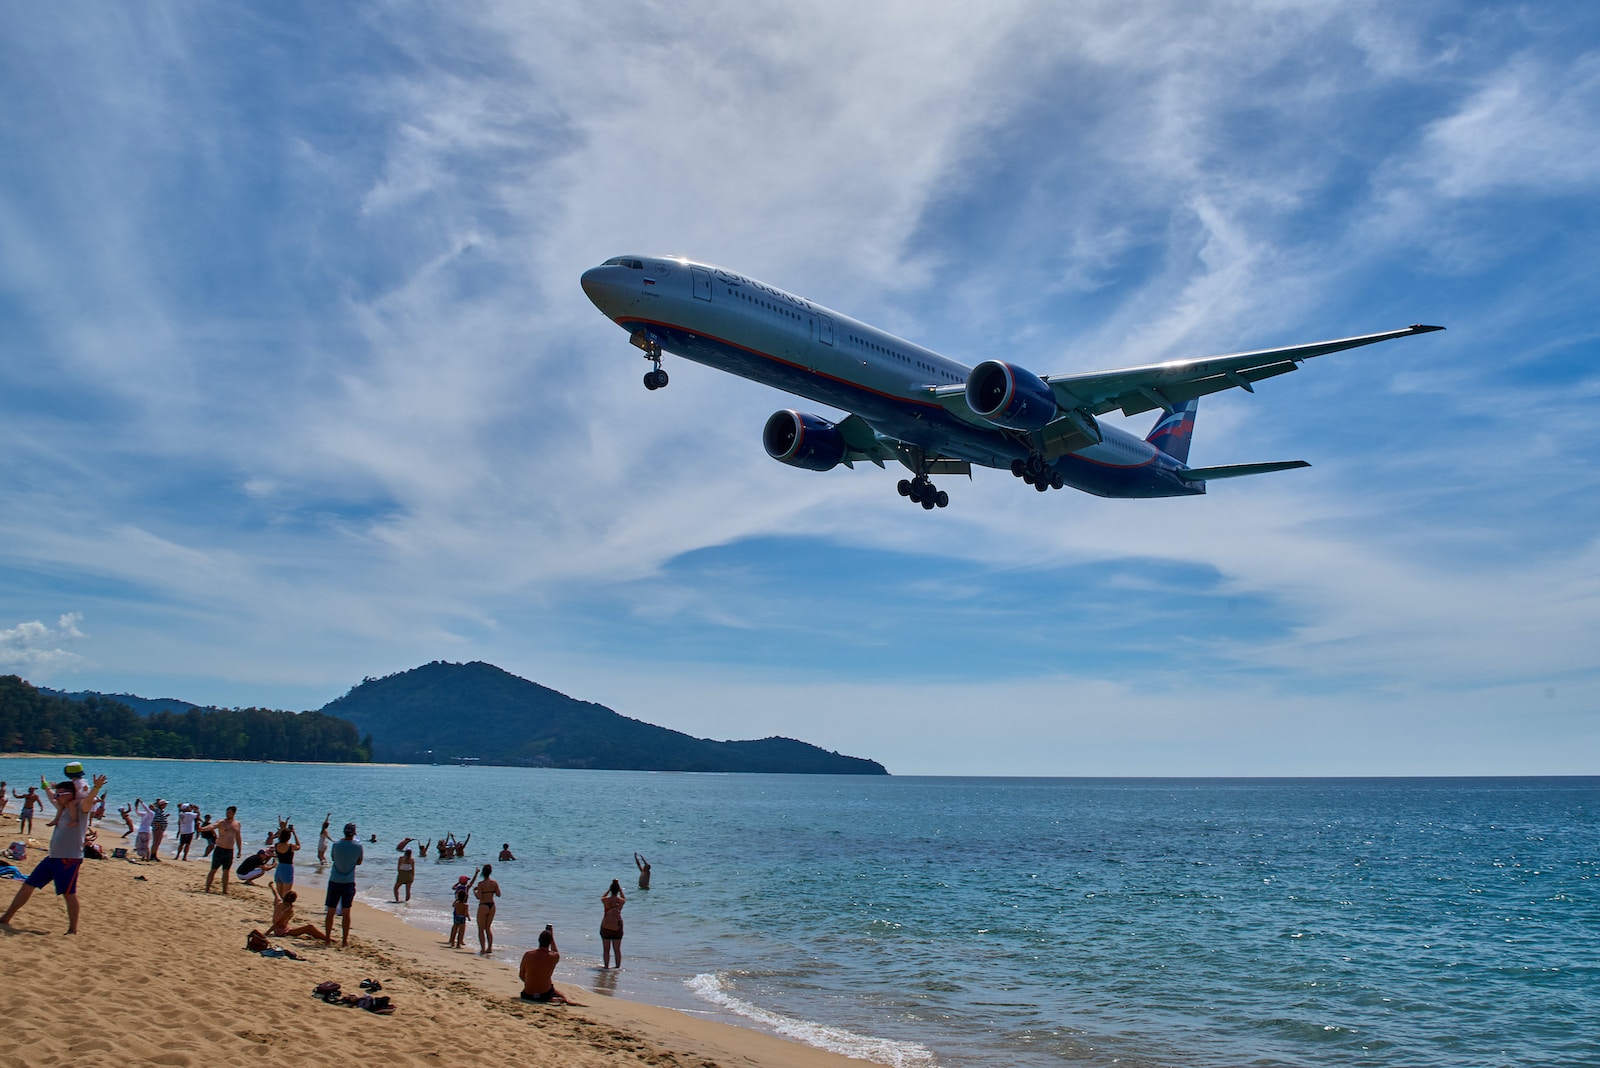 Eine Touristenattaktion – auf Phuket landen die großen Passagierflieger nur wenige Meter über den Strand hinweg.